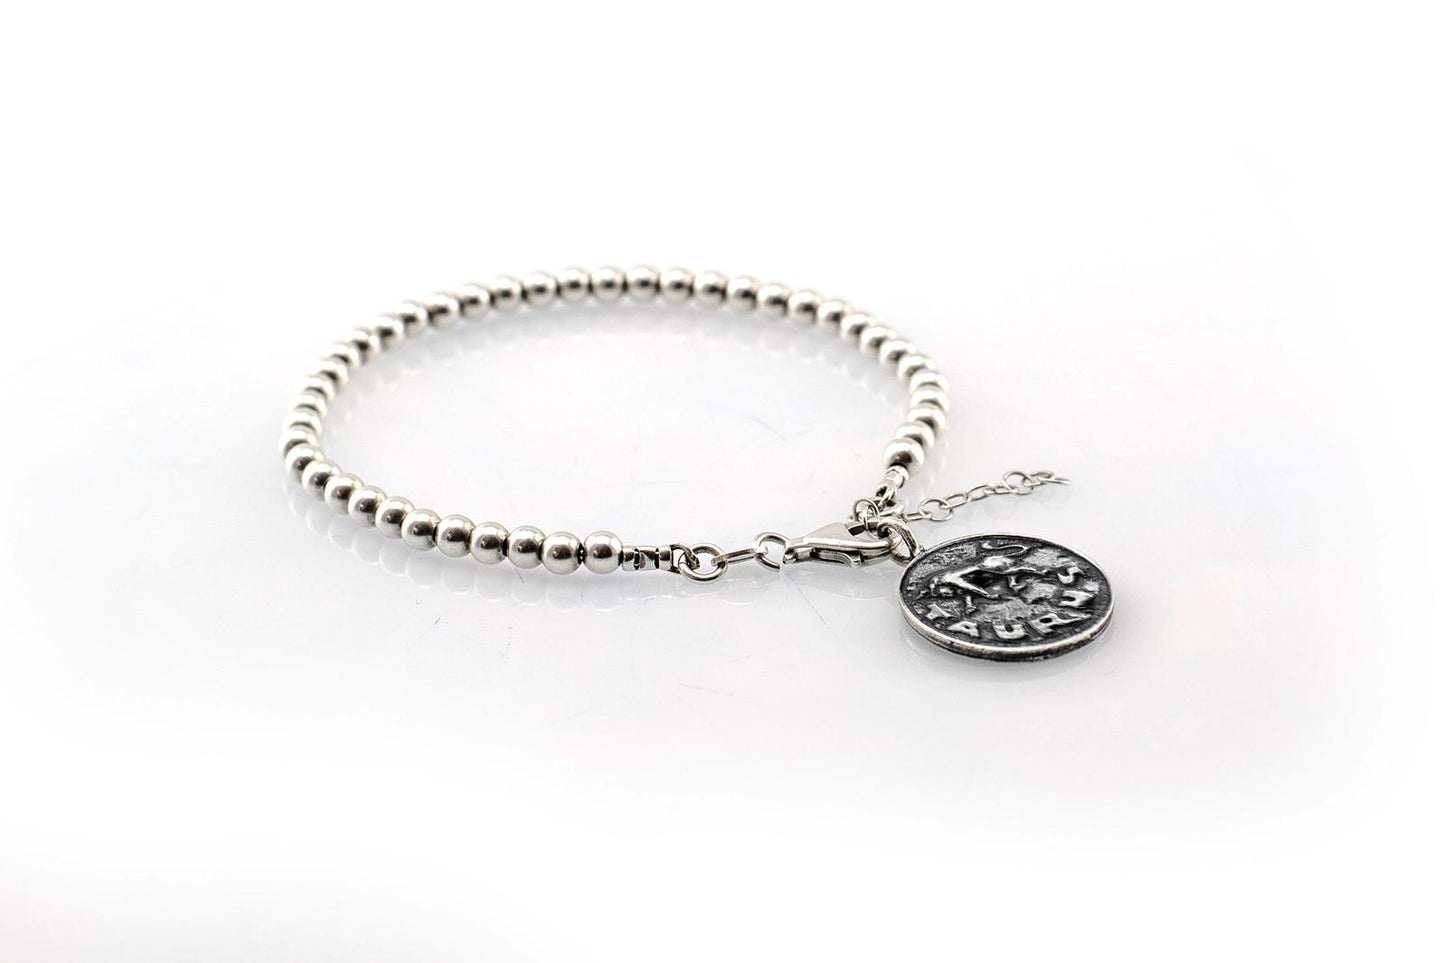 Taurus medallion with a Bead Bracelet -Zodiac jewelry -One of kind jewelry